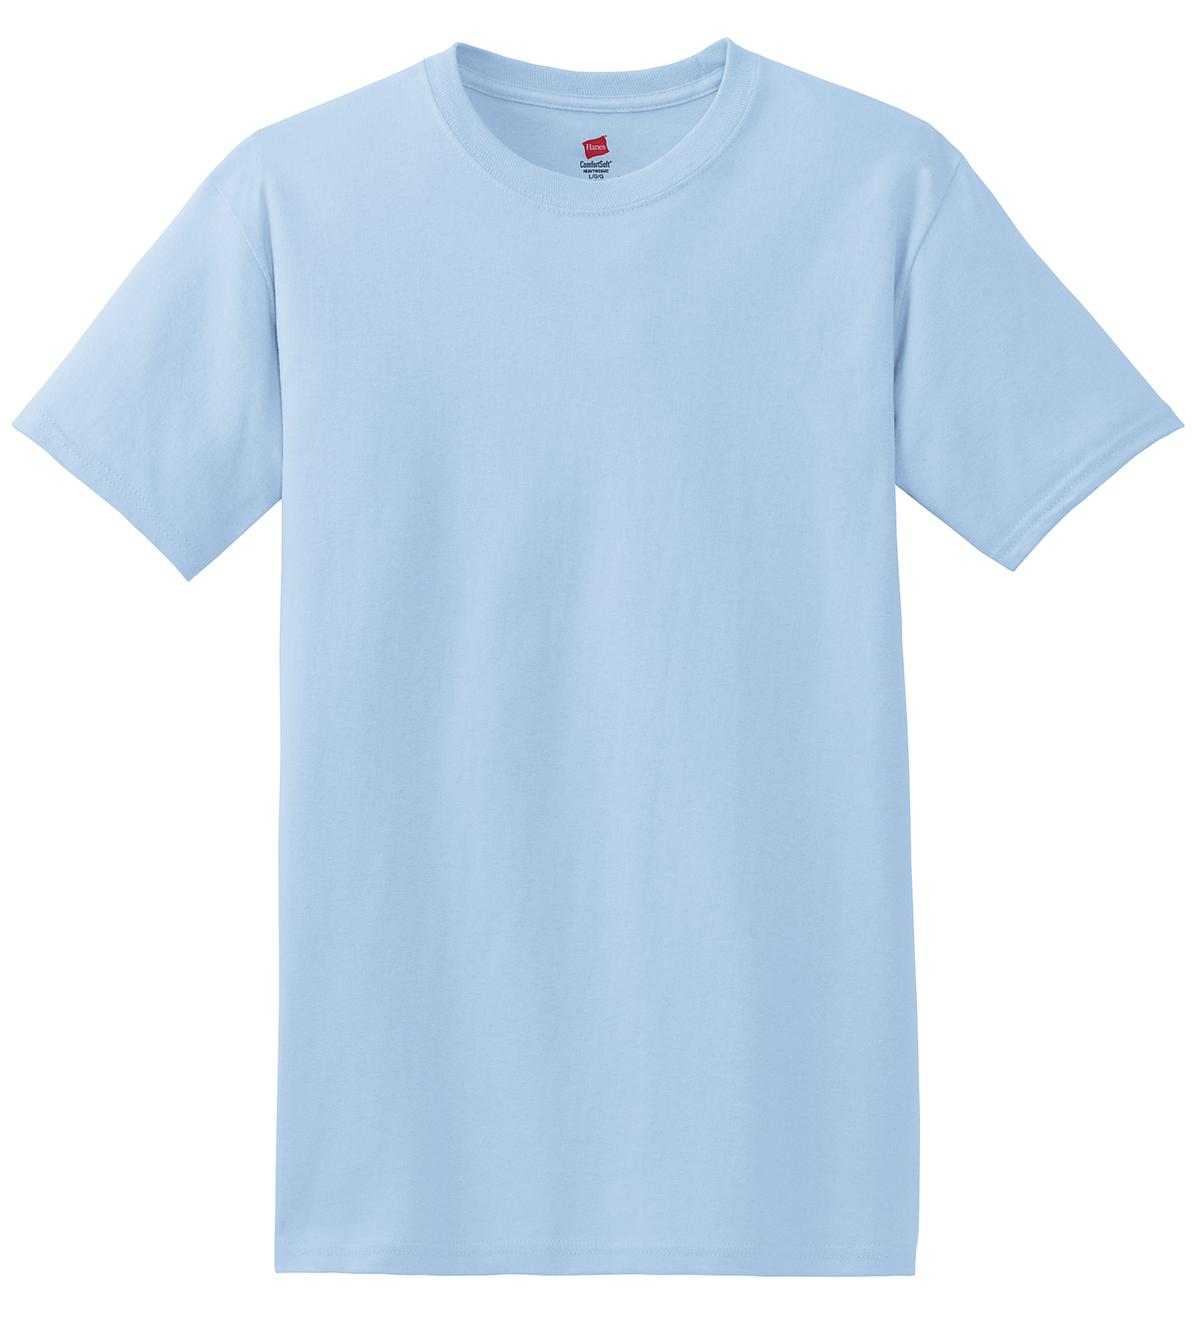 Hanes 5280 Comfortsoft 100% Cotton T-Shirt - Light Blue - HIT a Double